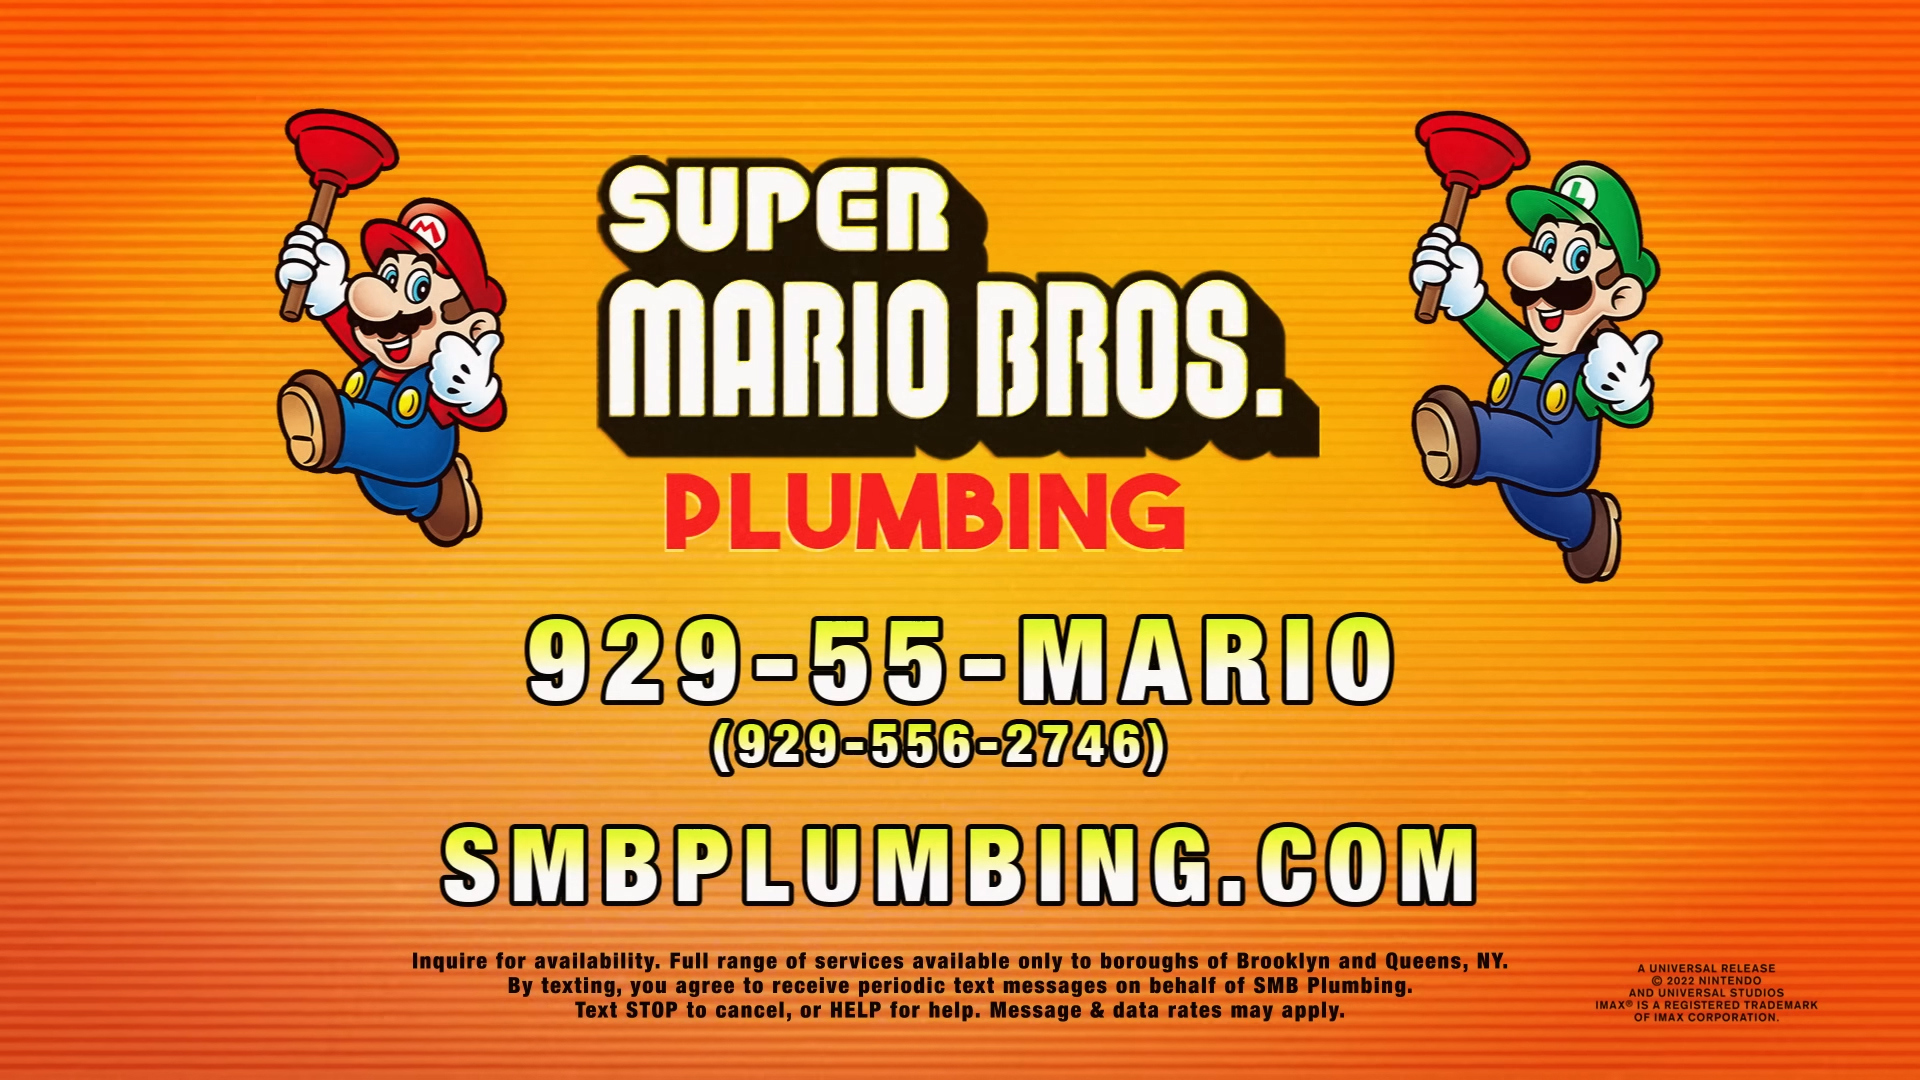 Super Mario Bros. Plumbing Contact